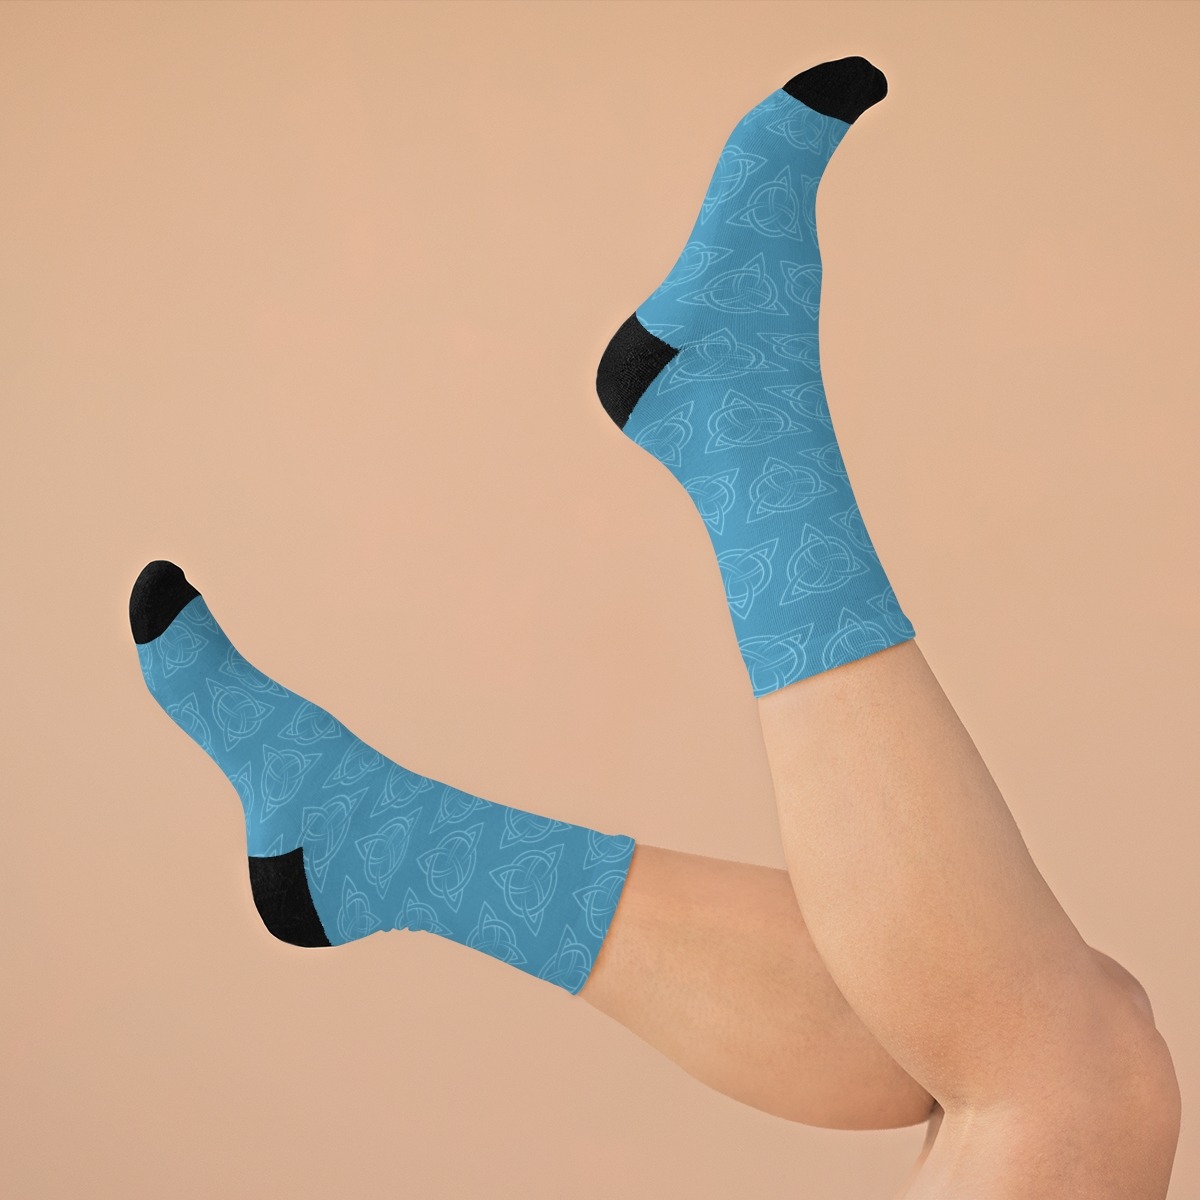 Blue Celtic Triquetra Socks